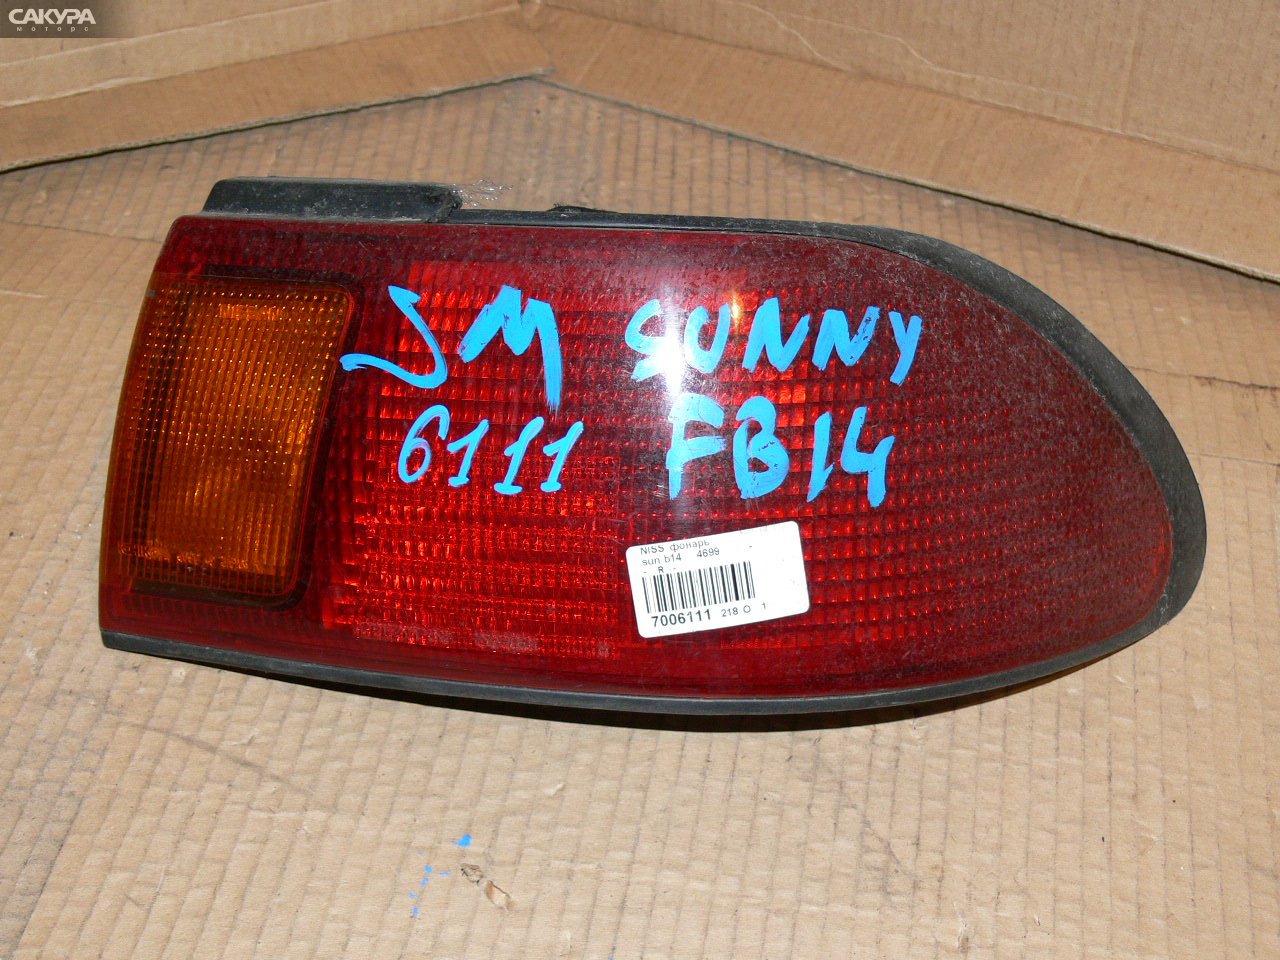 Фонарь стоп-сигнала правый Nissan Sunny B14 4699: купить в Сакура Иркутск.